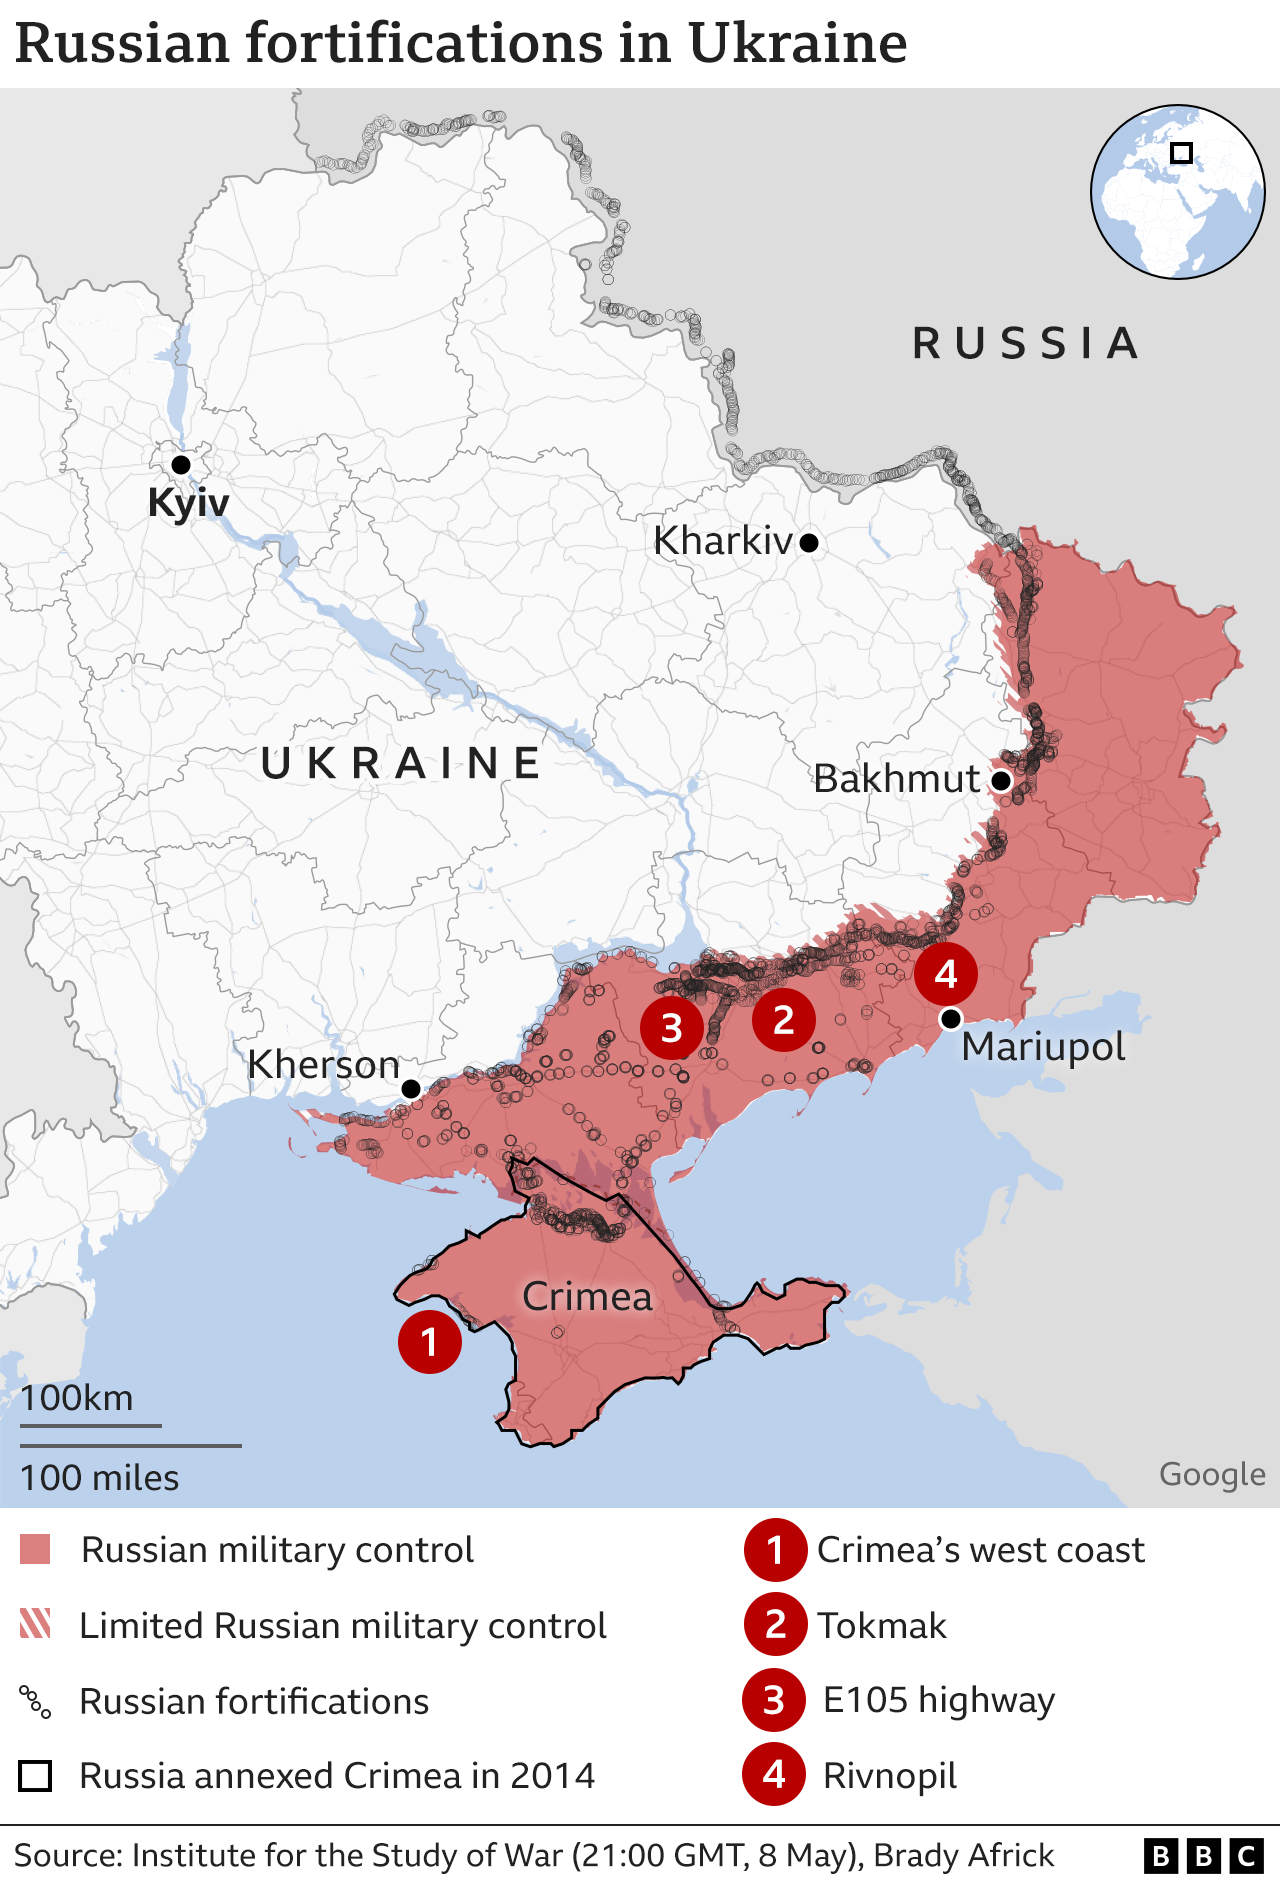 Χάρτης που δείχνει περιοχές που ελέγχονται από τη Ρωσία στην Ουκρανία, με ένα πυκνό δίκτυο χαρακωμάτων που σημειώνονται στην πρώτη γραμμή και βαθιά στη νότια Ουκρανία.